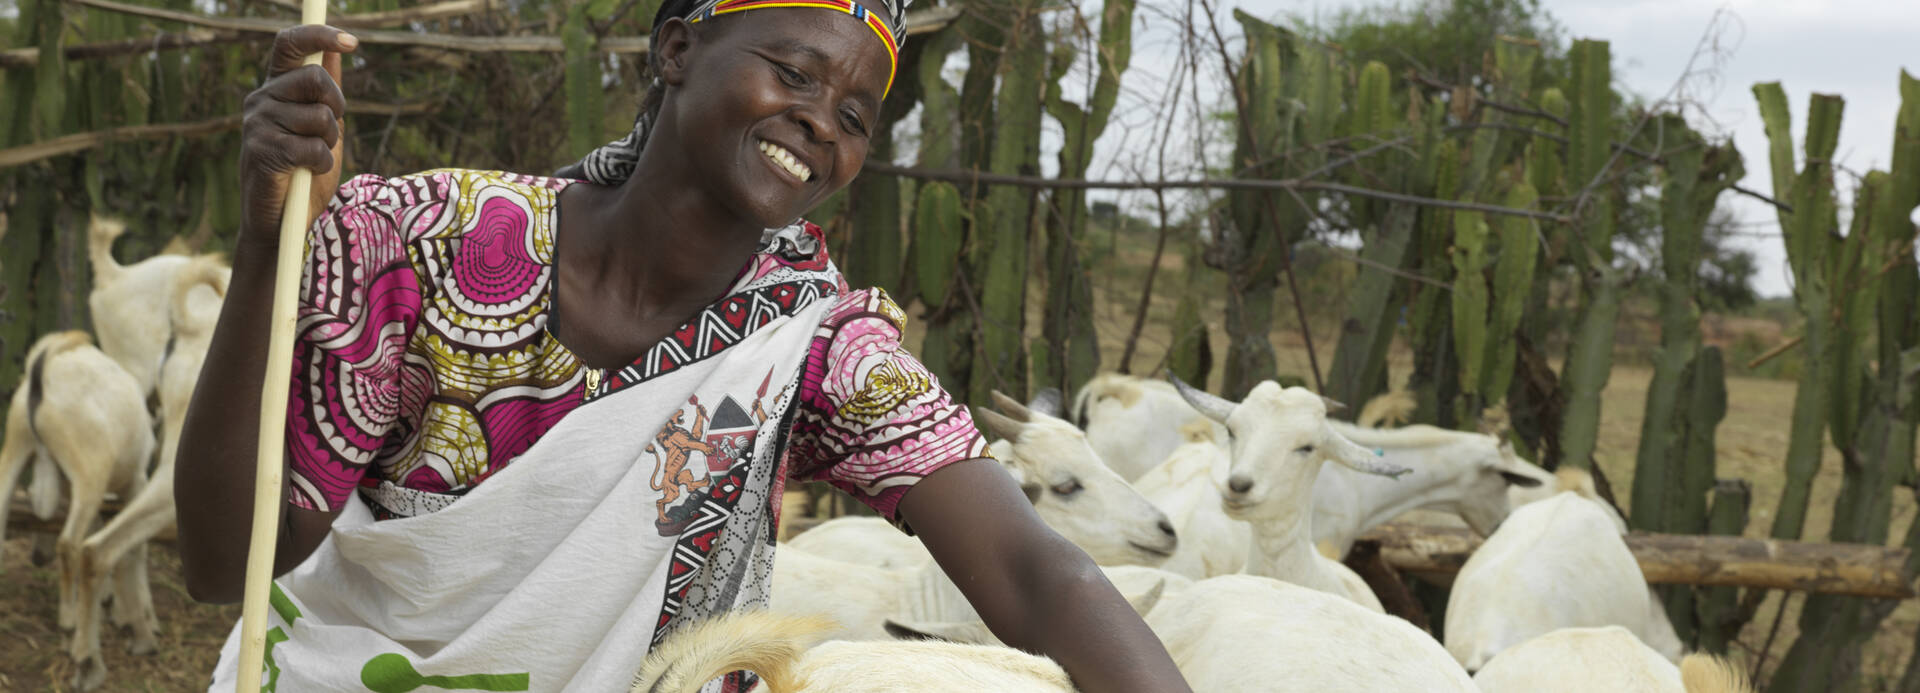 Rosalyne steht lachend im Ziegengehege in Kenia und streichelt eine Ziege.